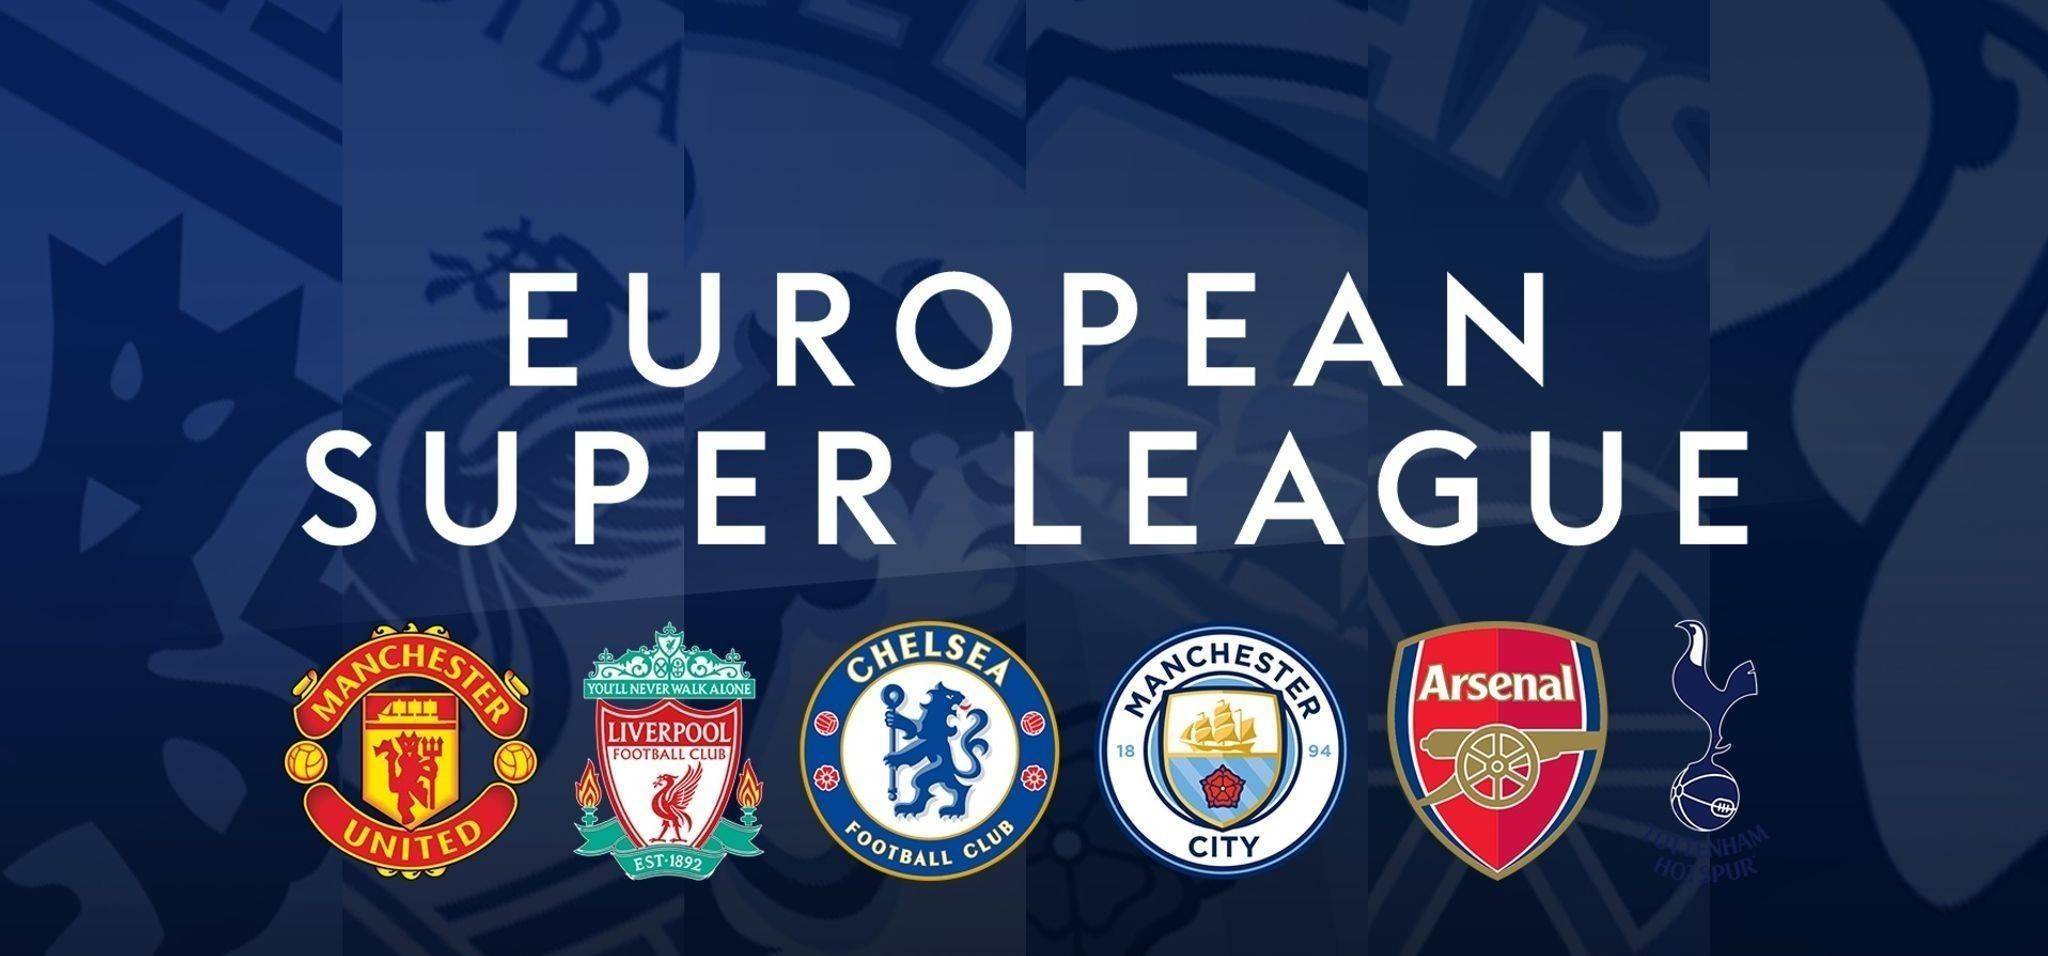 欧洲超级联赛将会起诉退出的英超big6